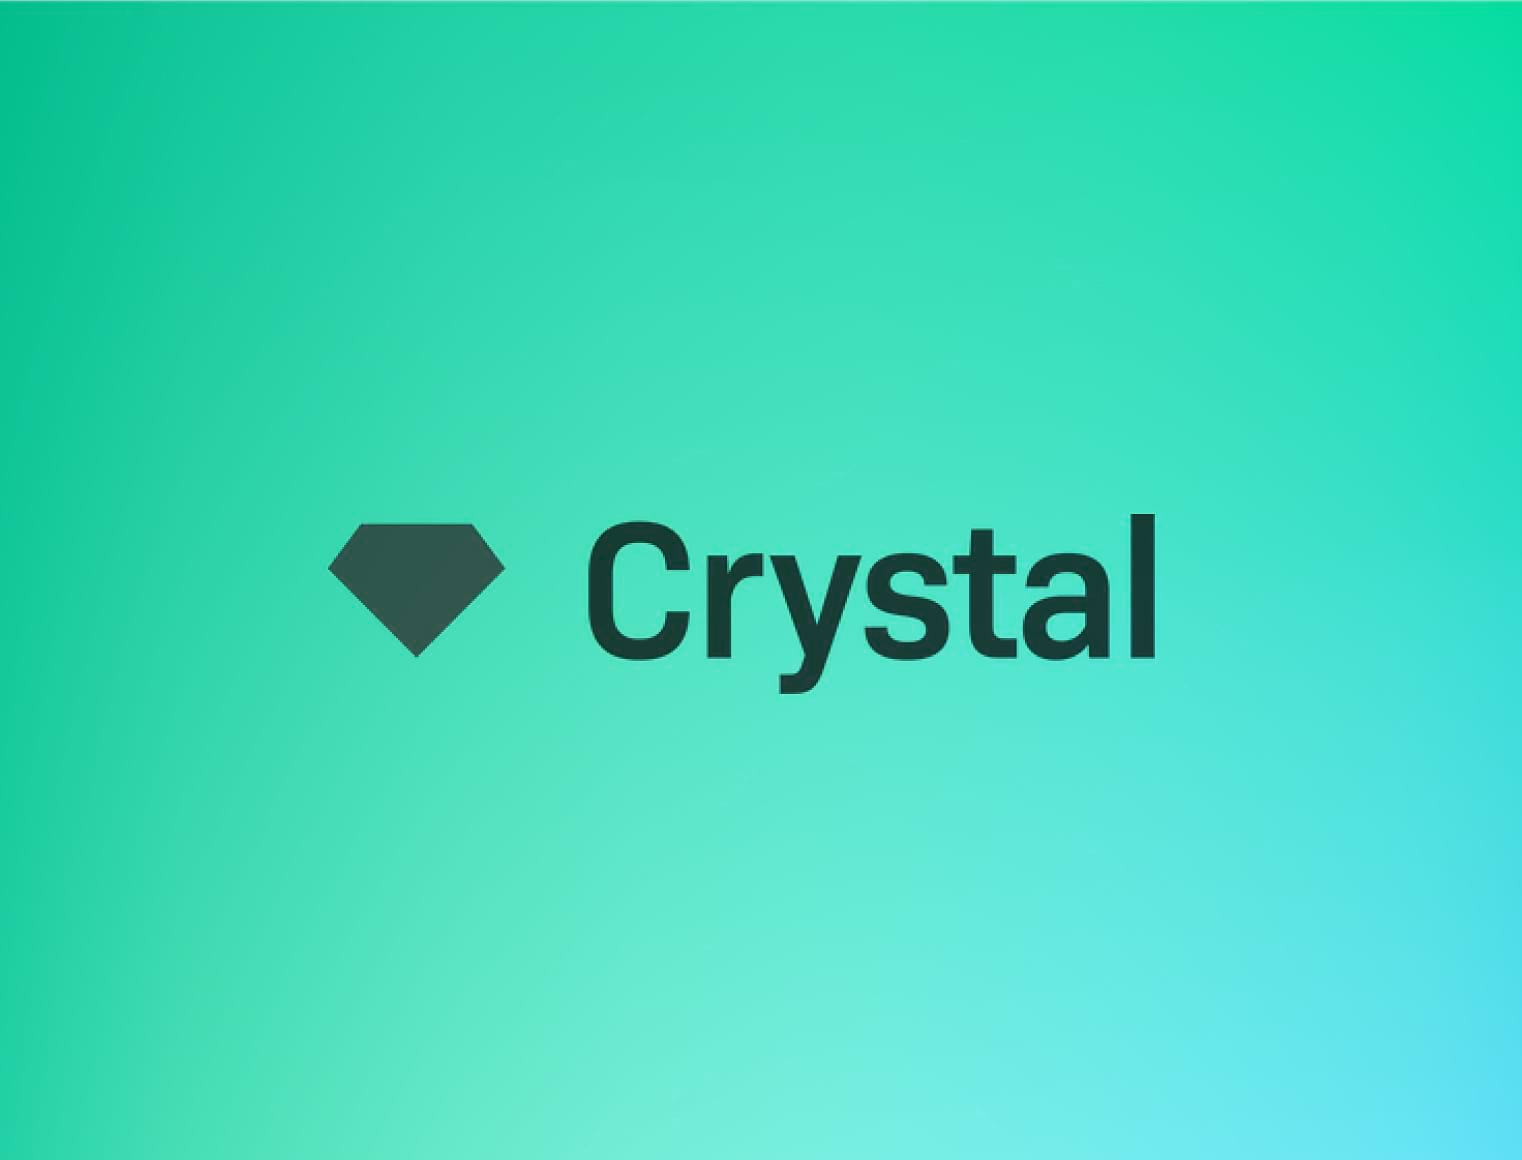 ETC Group nomme Crystal, leader de l'analyse de la blockchain, pour fournir des services d'analyse | ETC Group